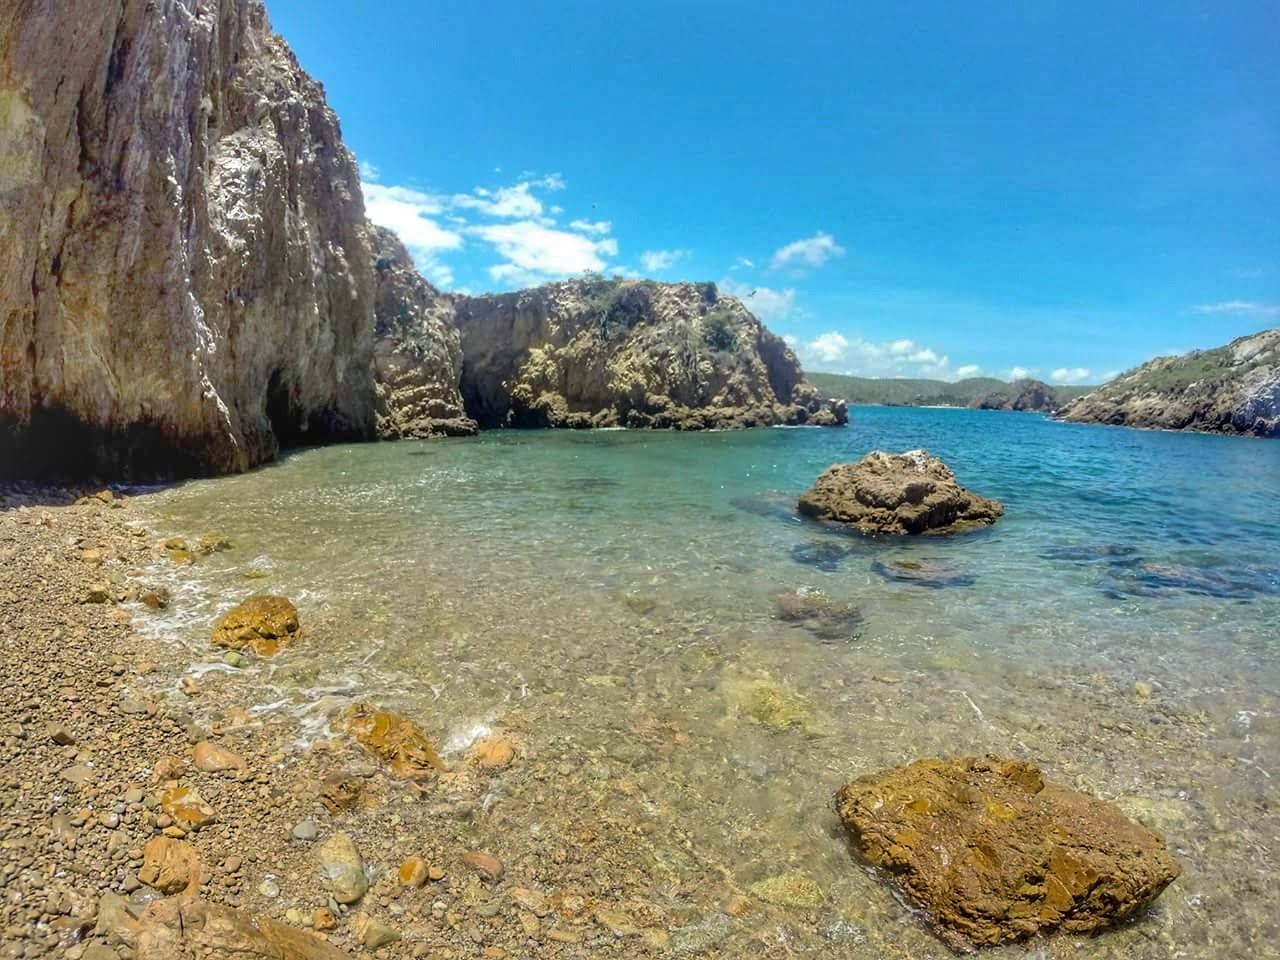 Paraiso beach的照片 带有碧绿色纯水表面